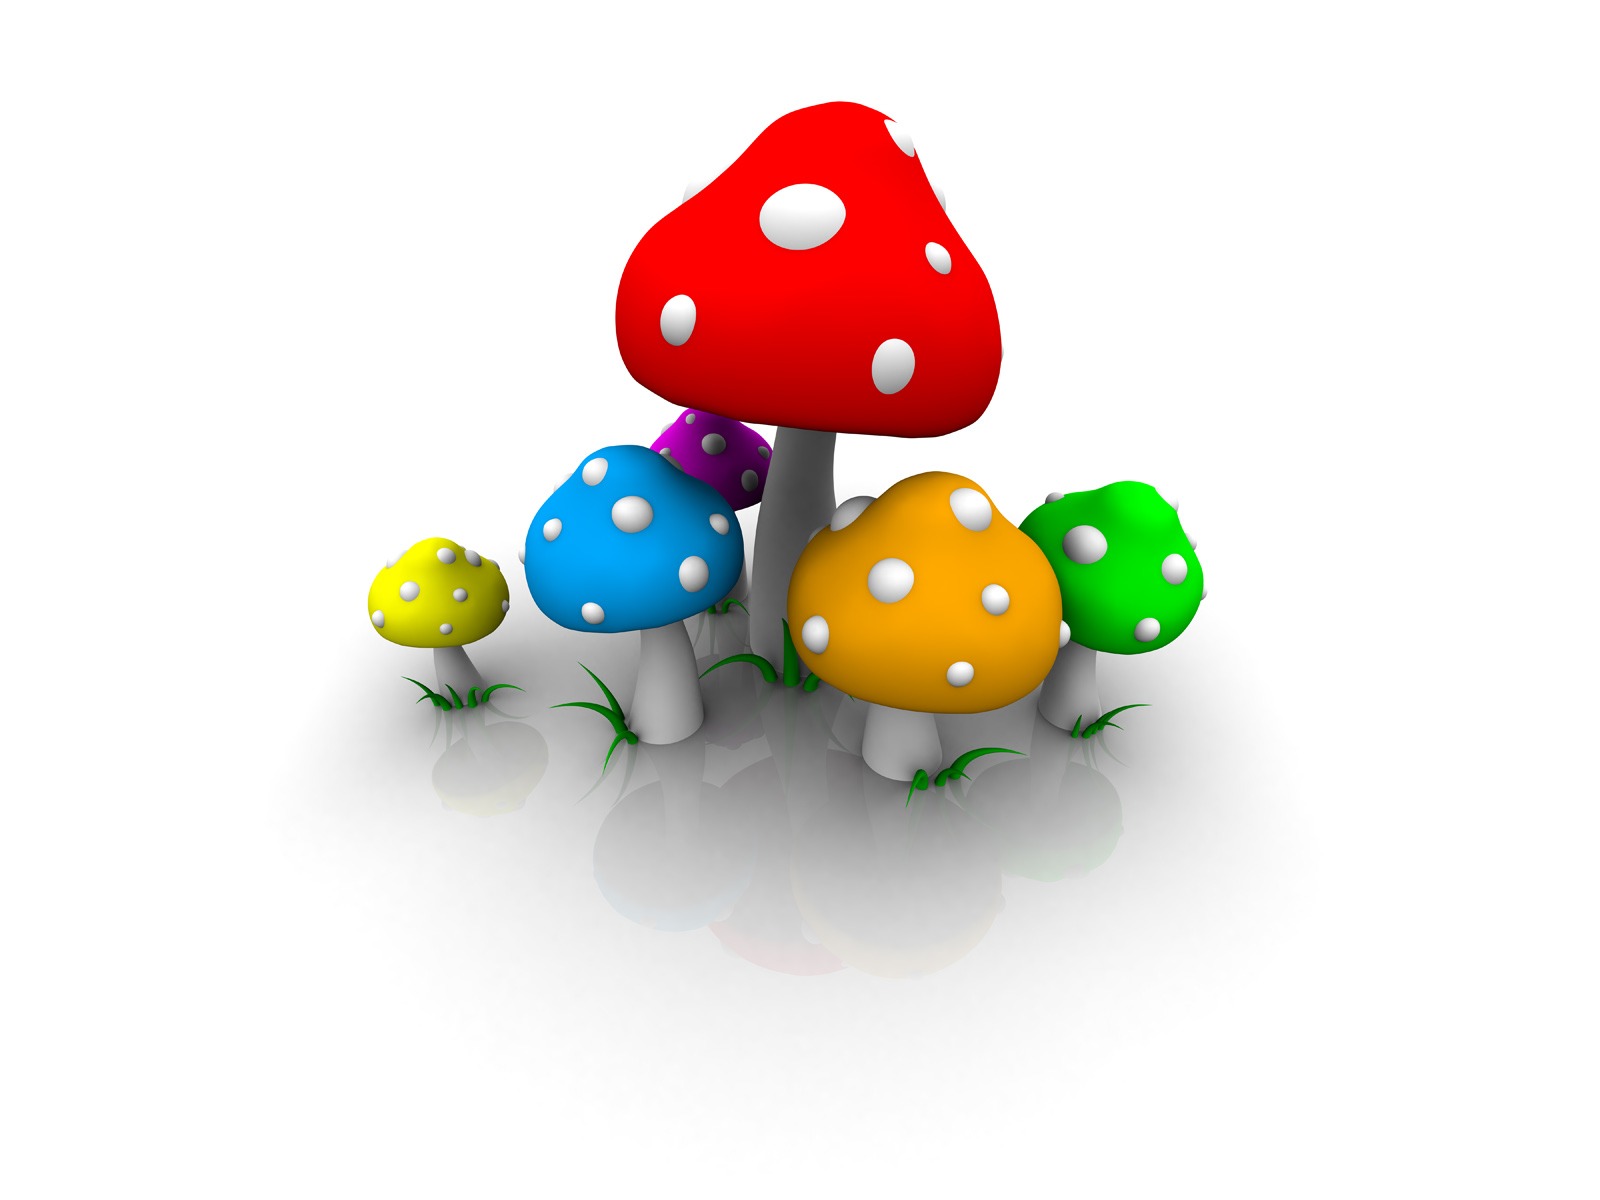 Colored mushrooms wallpaper. Colored mushrooms